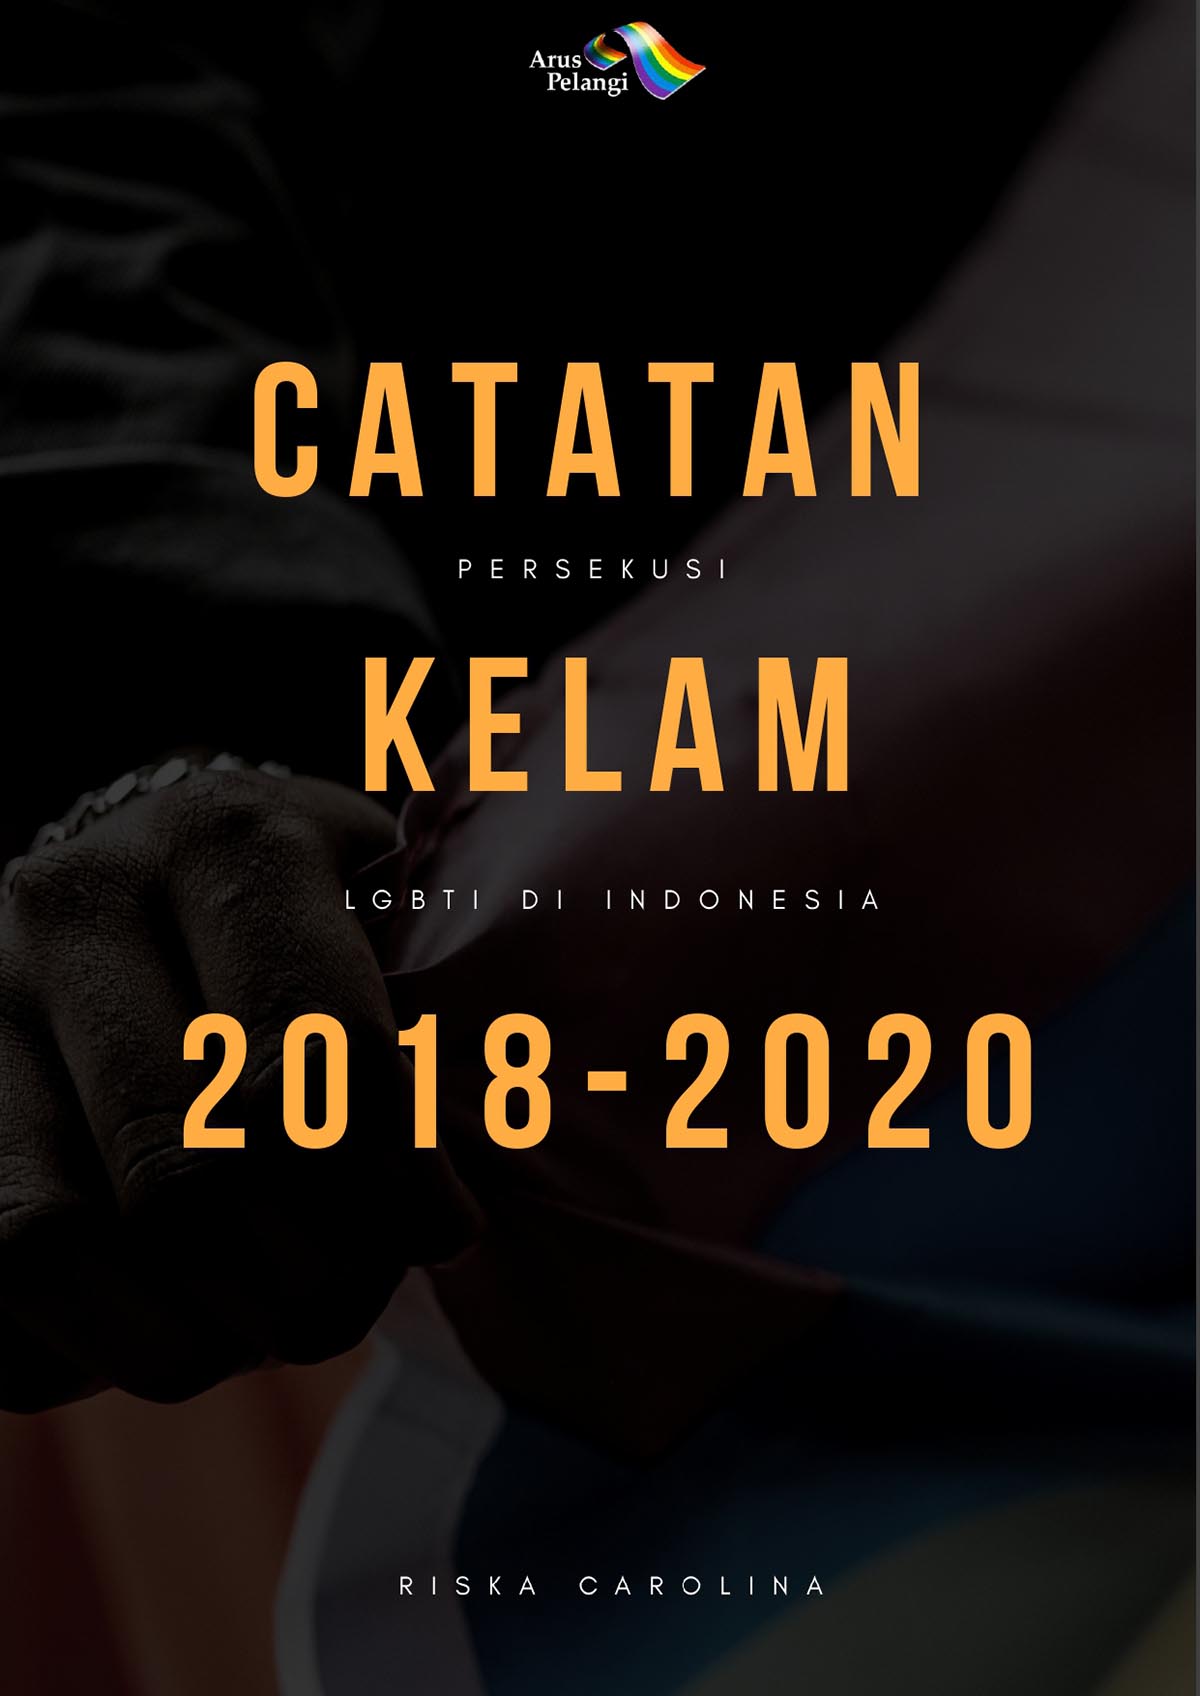 Read more about the article Catatan Persekusi Kelam LGBTI di Indonesia 2018-2020